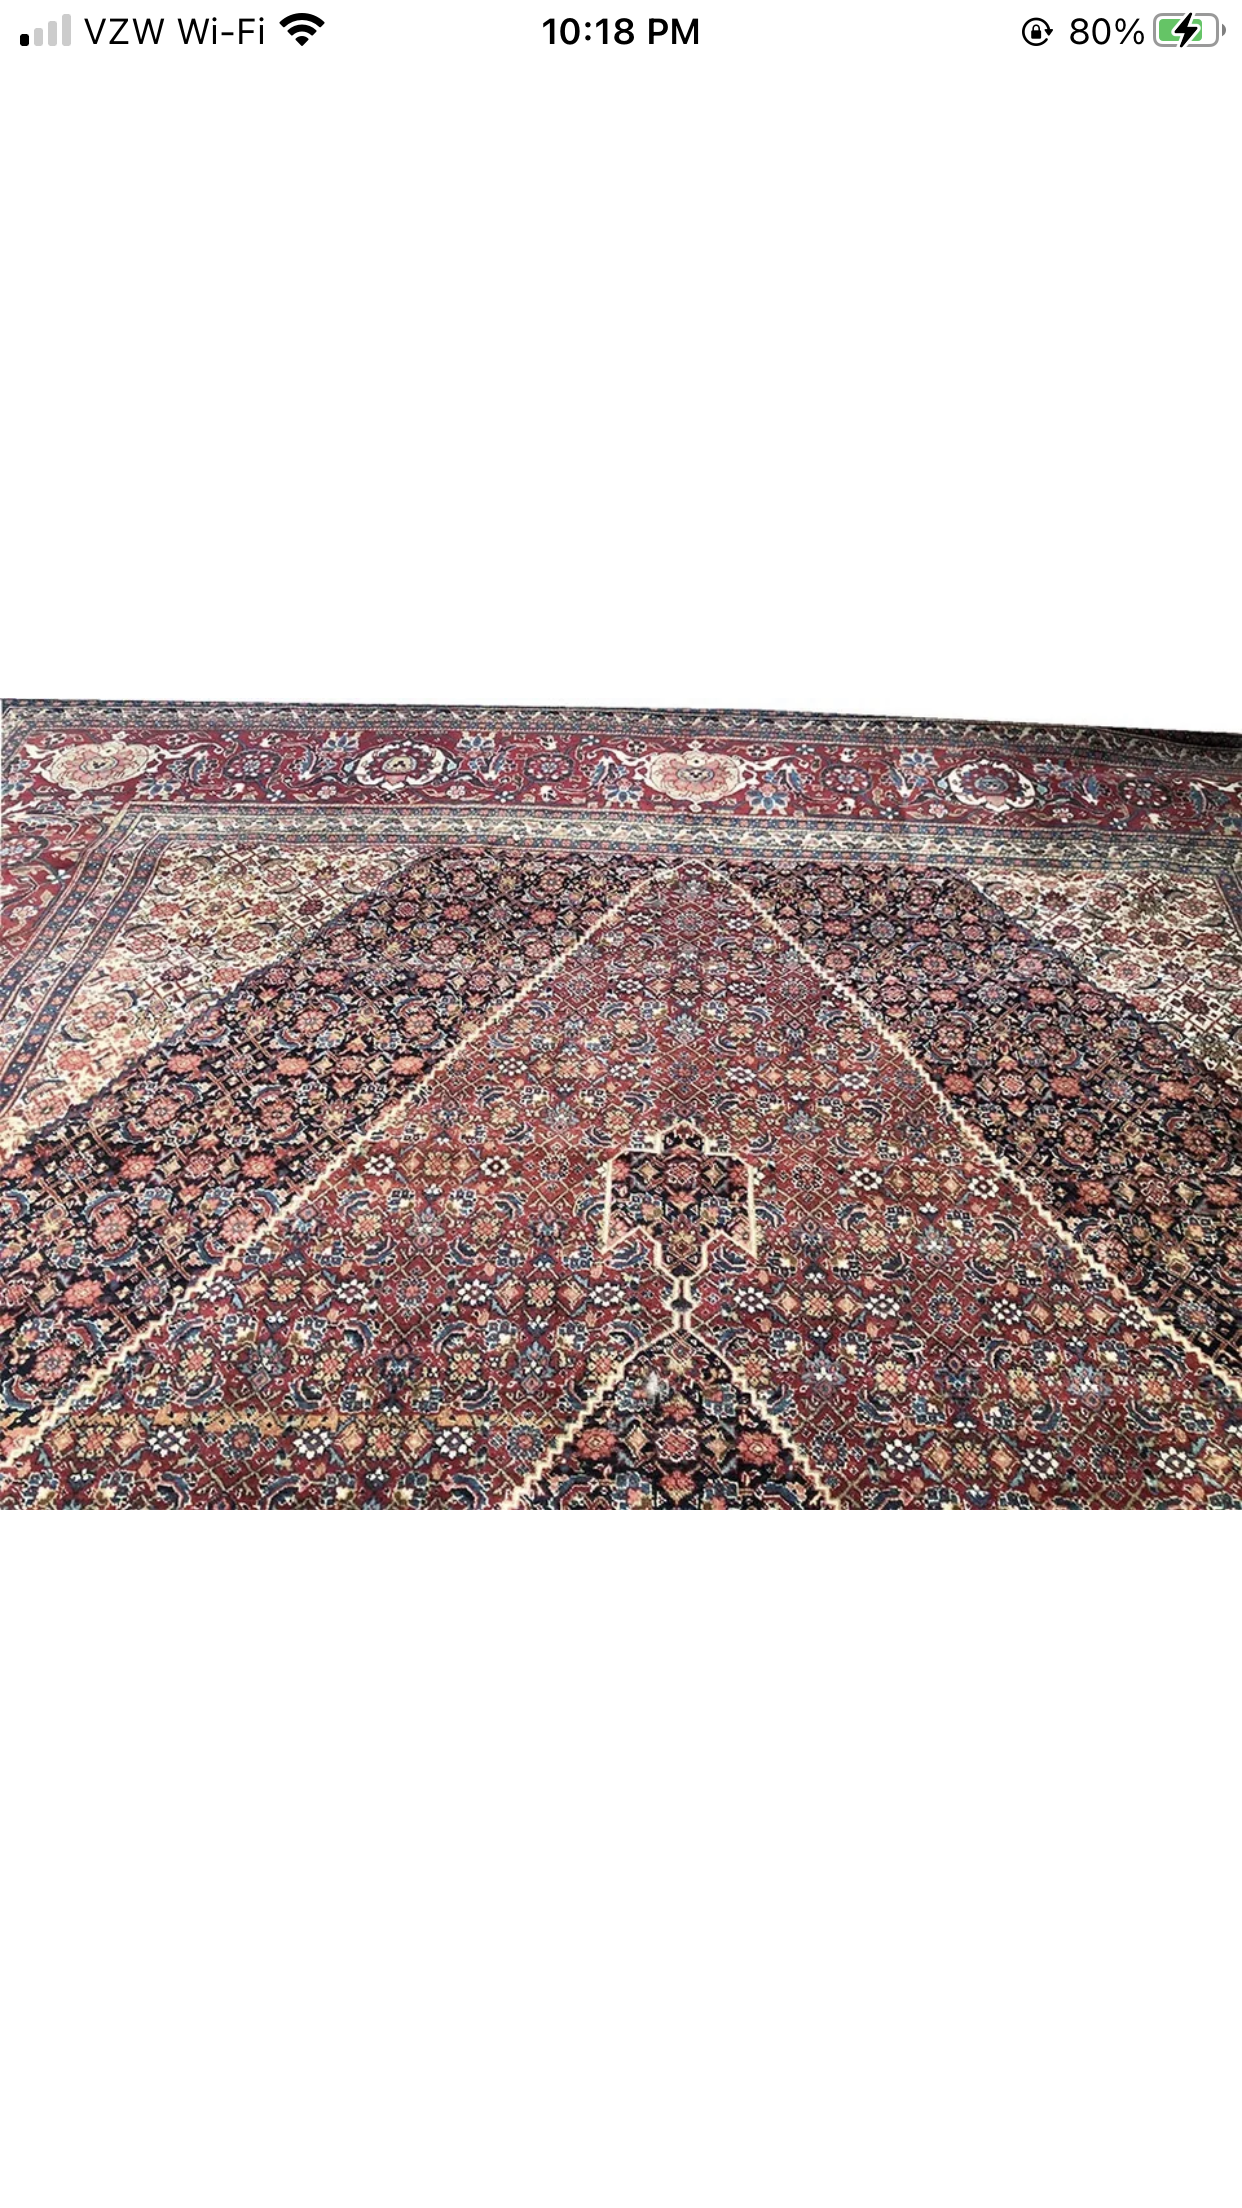 Antique Palace Size 11’ x 19’ Persian Haji Jalili Style Tabriz Rug